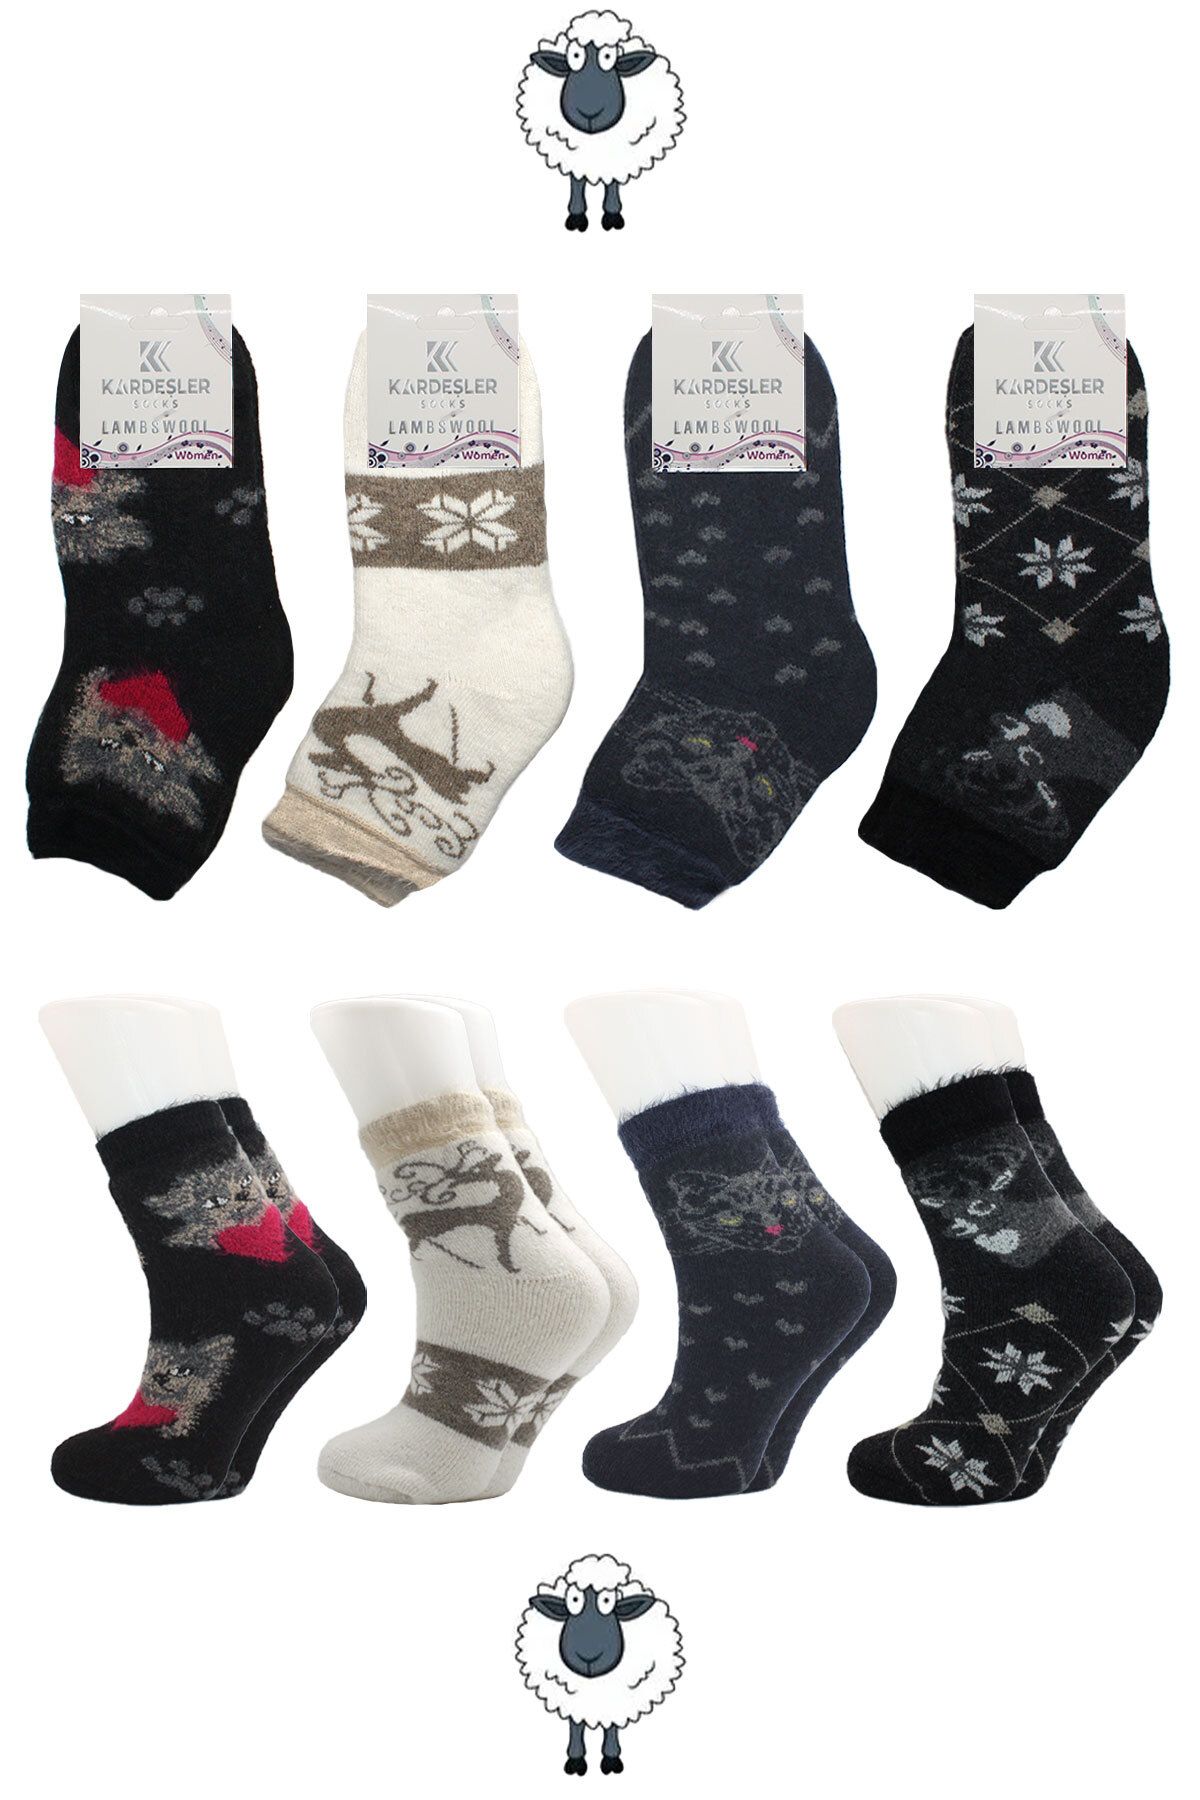 KARDEŞLER ÇORAP Kadın Lambswool Yün Kışlık Kalın Yarım Konç Çorap 4'lü Paket